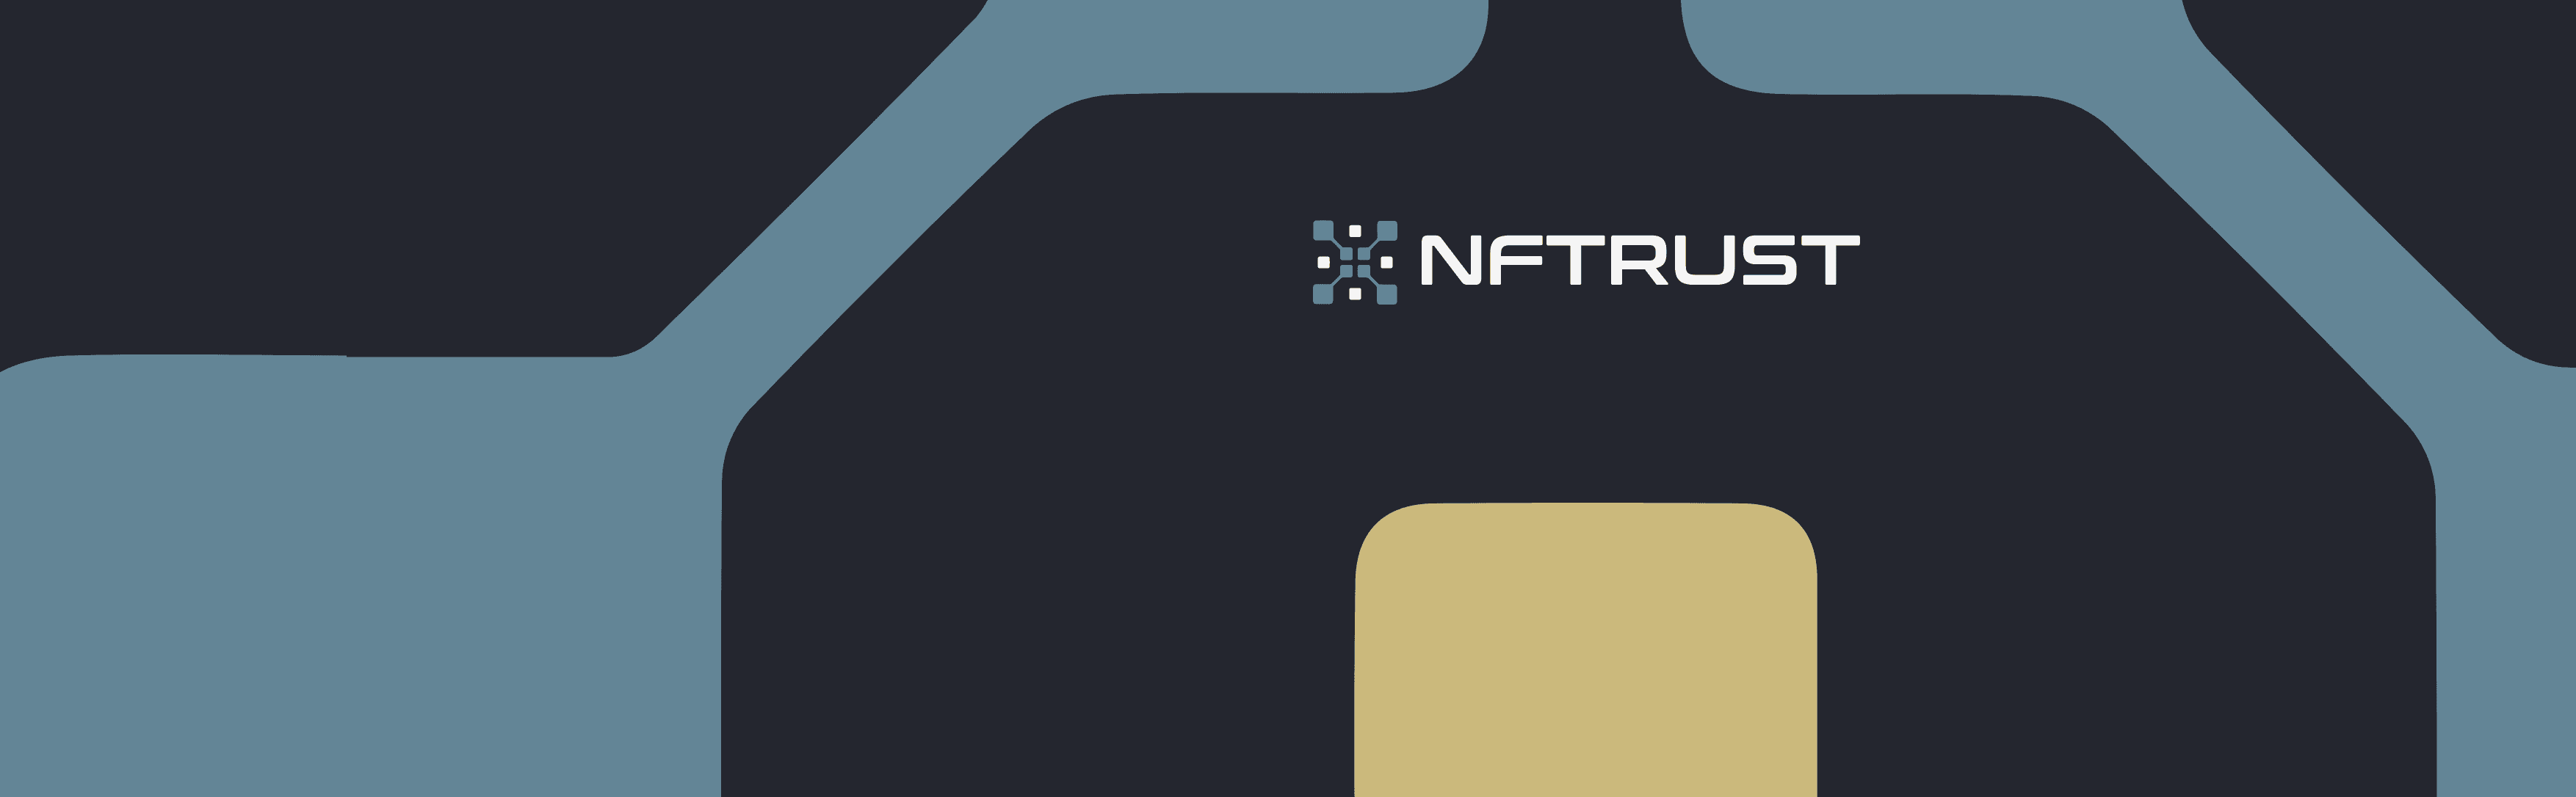 NFTrust1 Banner